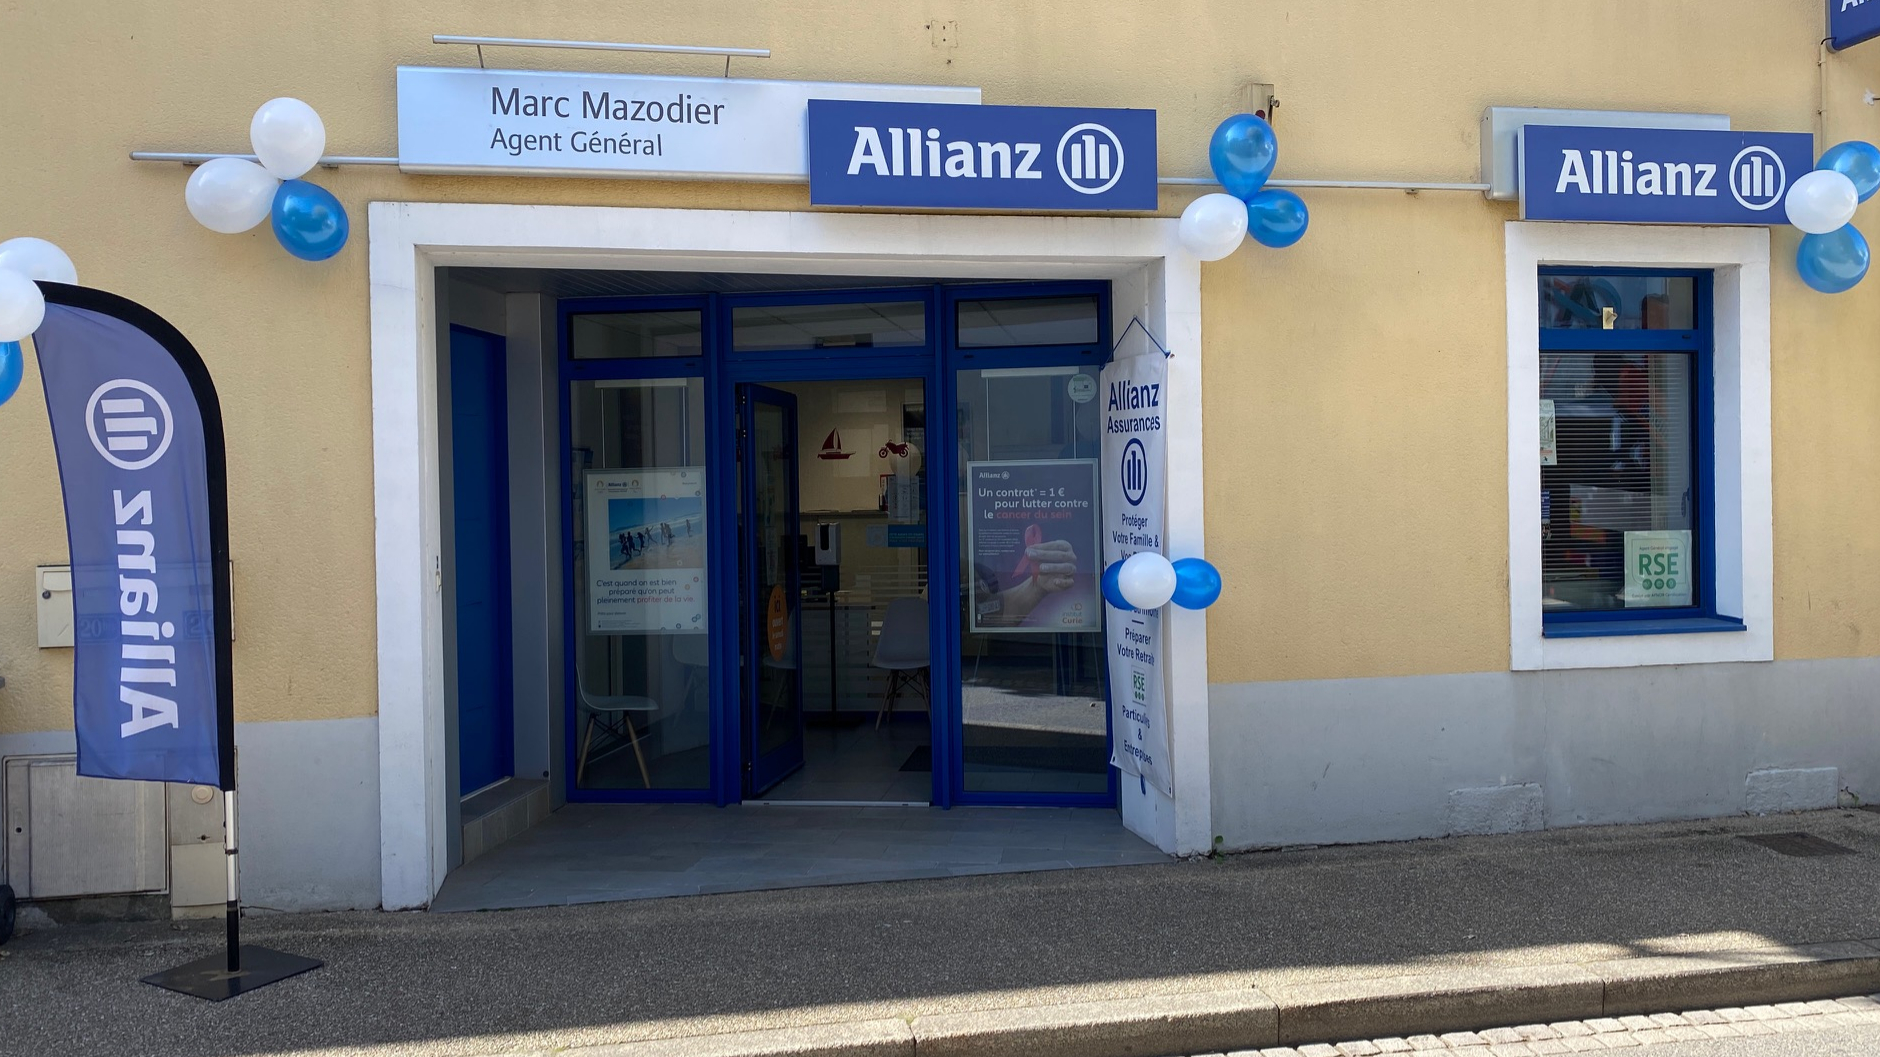 Allianz ST PHILBERT GRAND LIEU - MARC MAZODIER